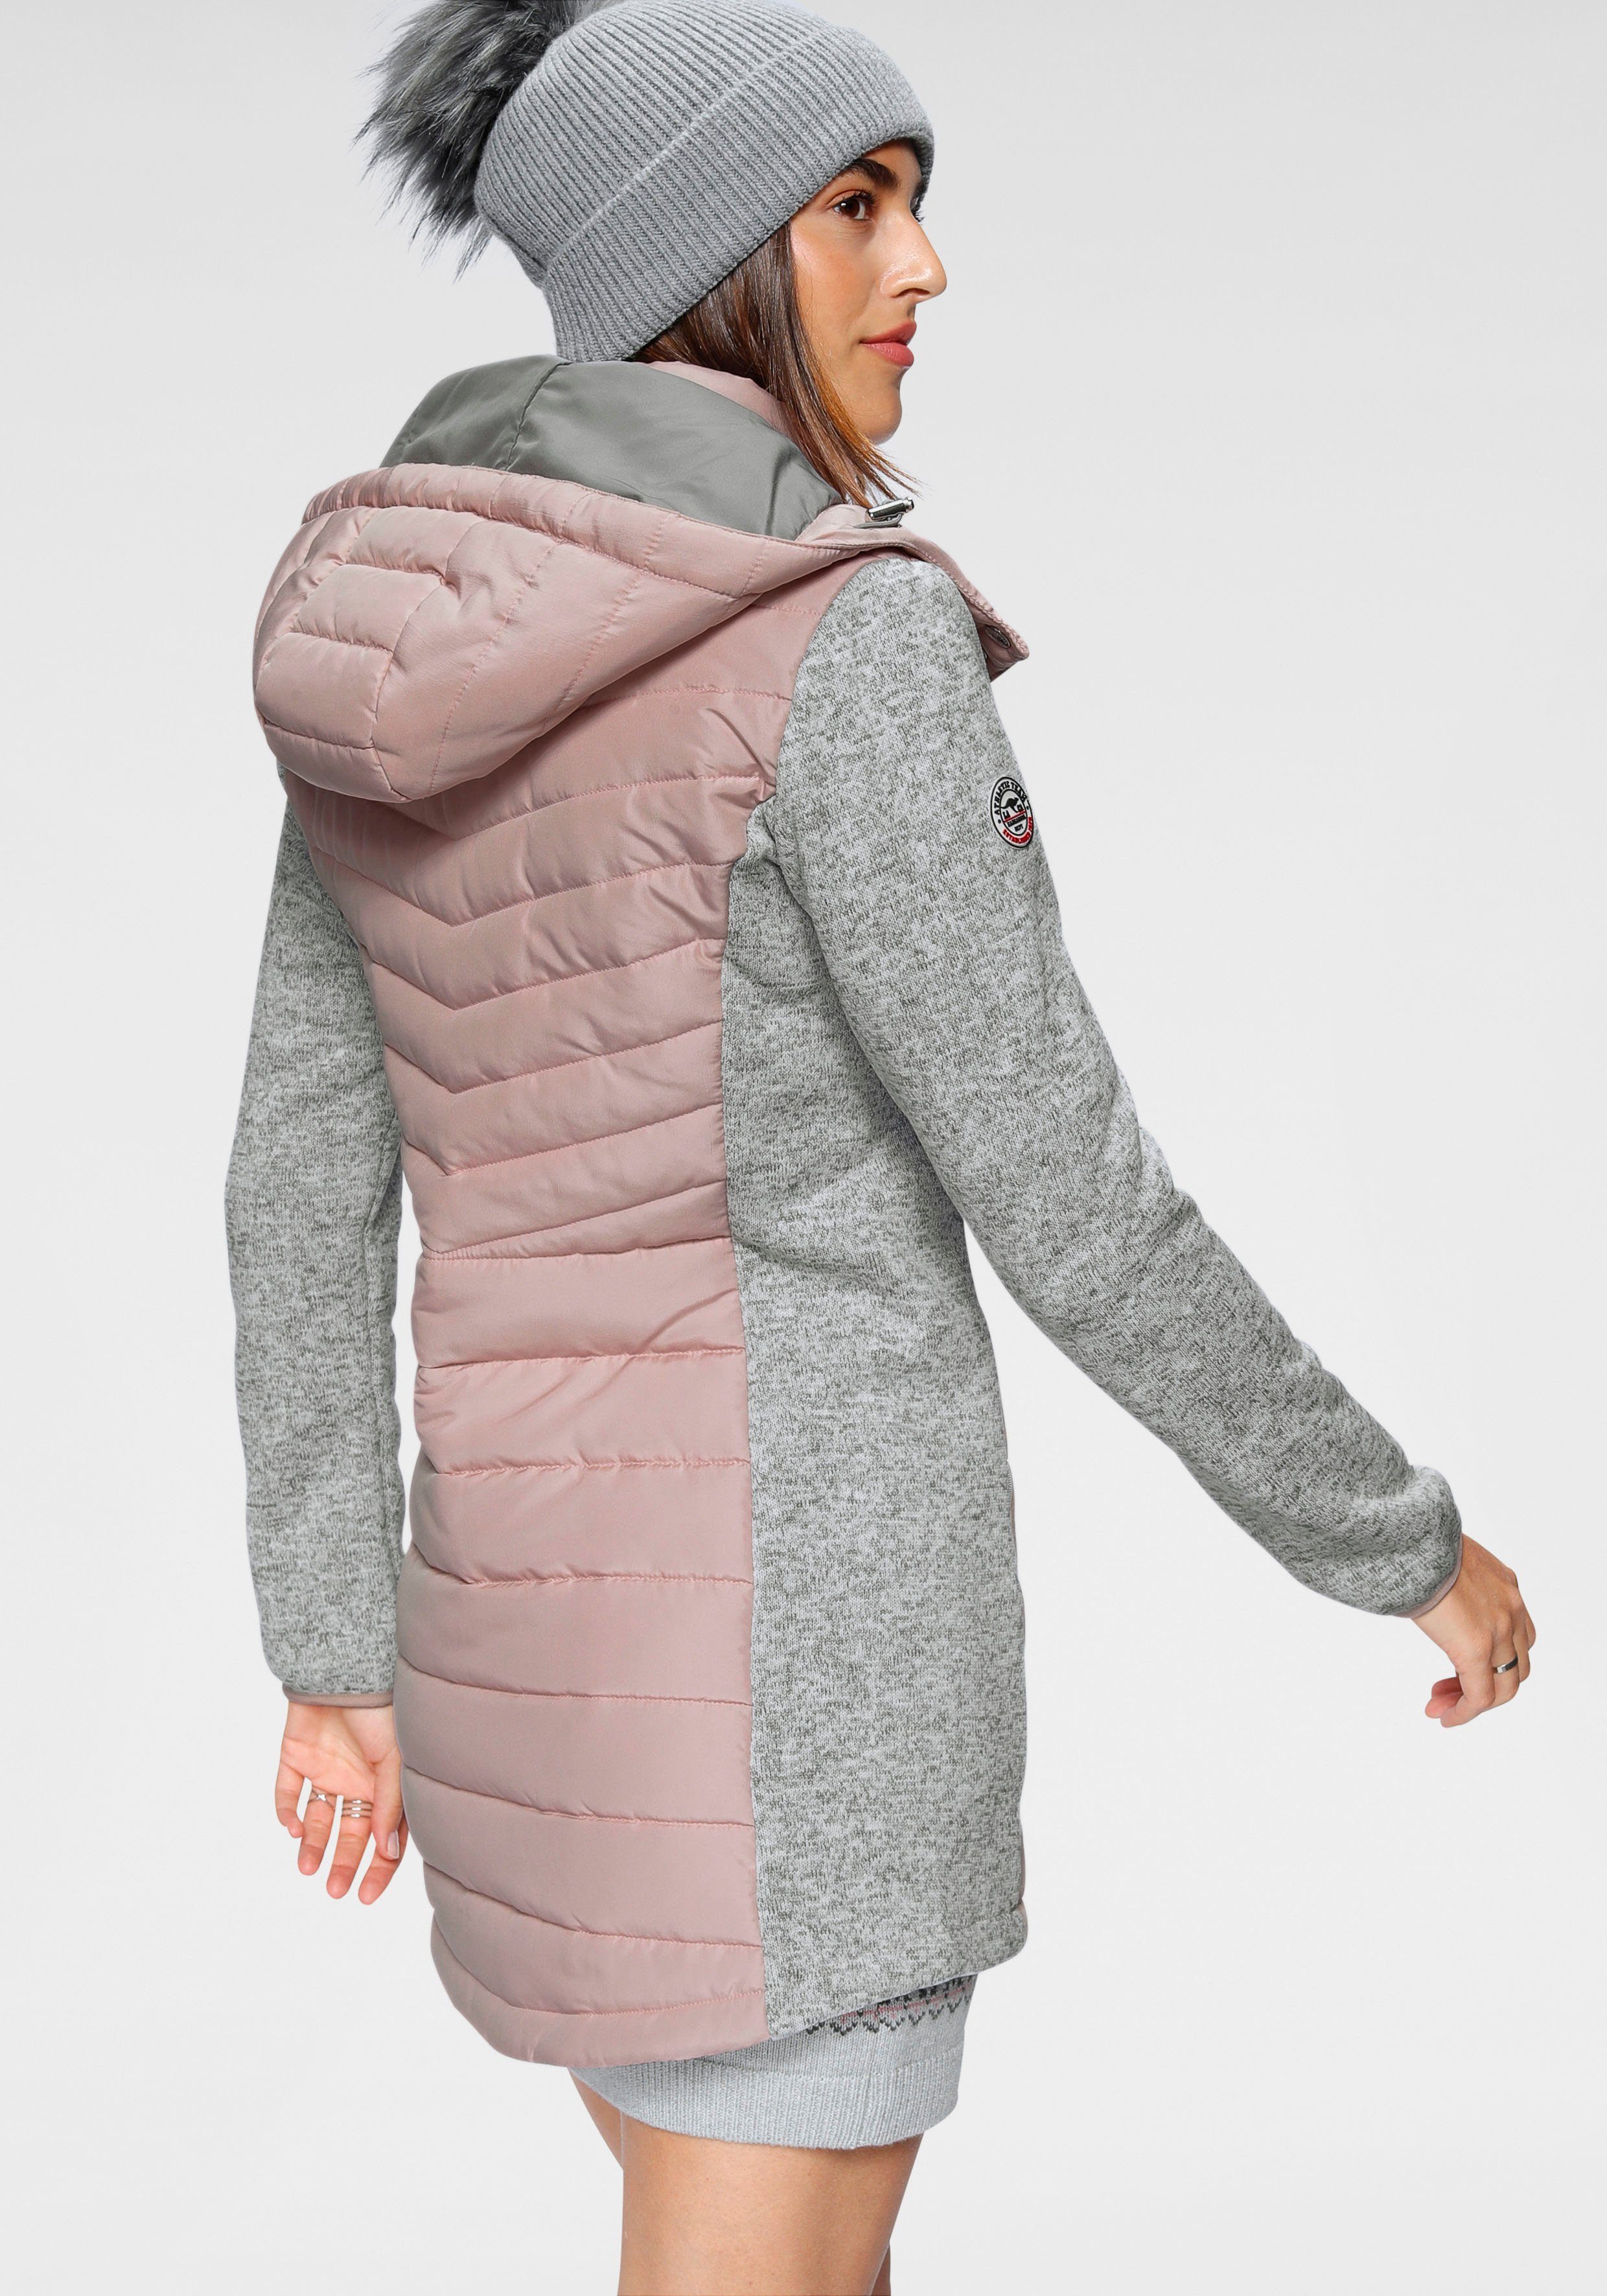 KangaROOS Langjacke im nachhaltigem Material) 2-In-1 Look (Jacke aus trendigen grau-rosa